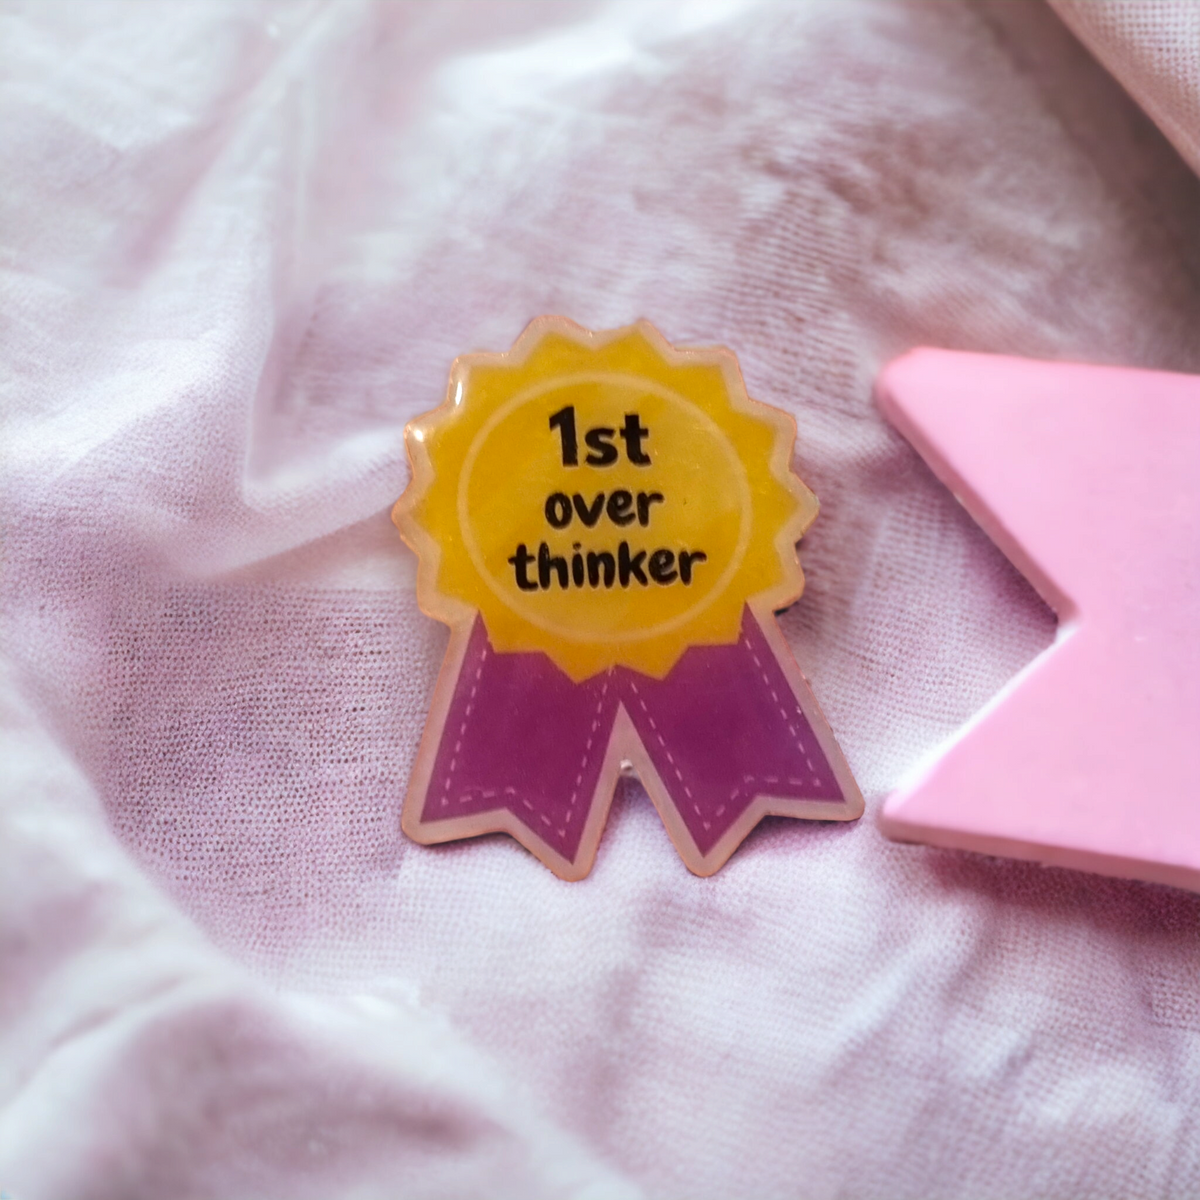 Over thinker winner badge